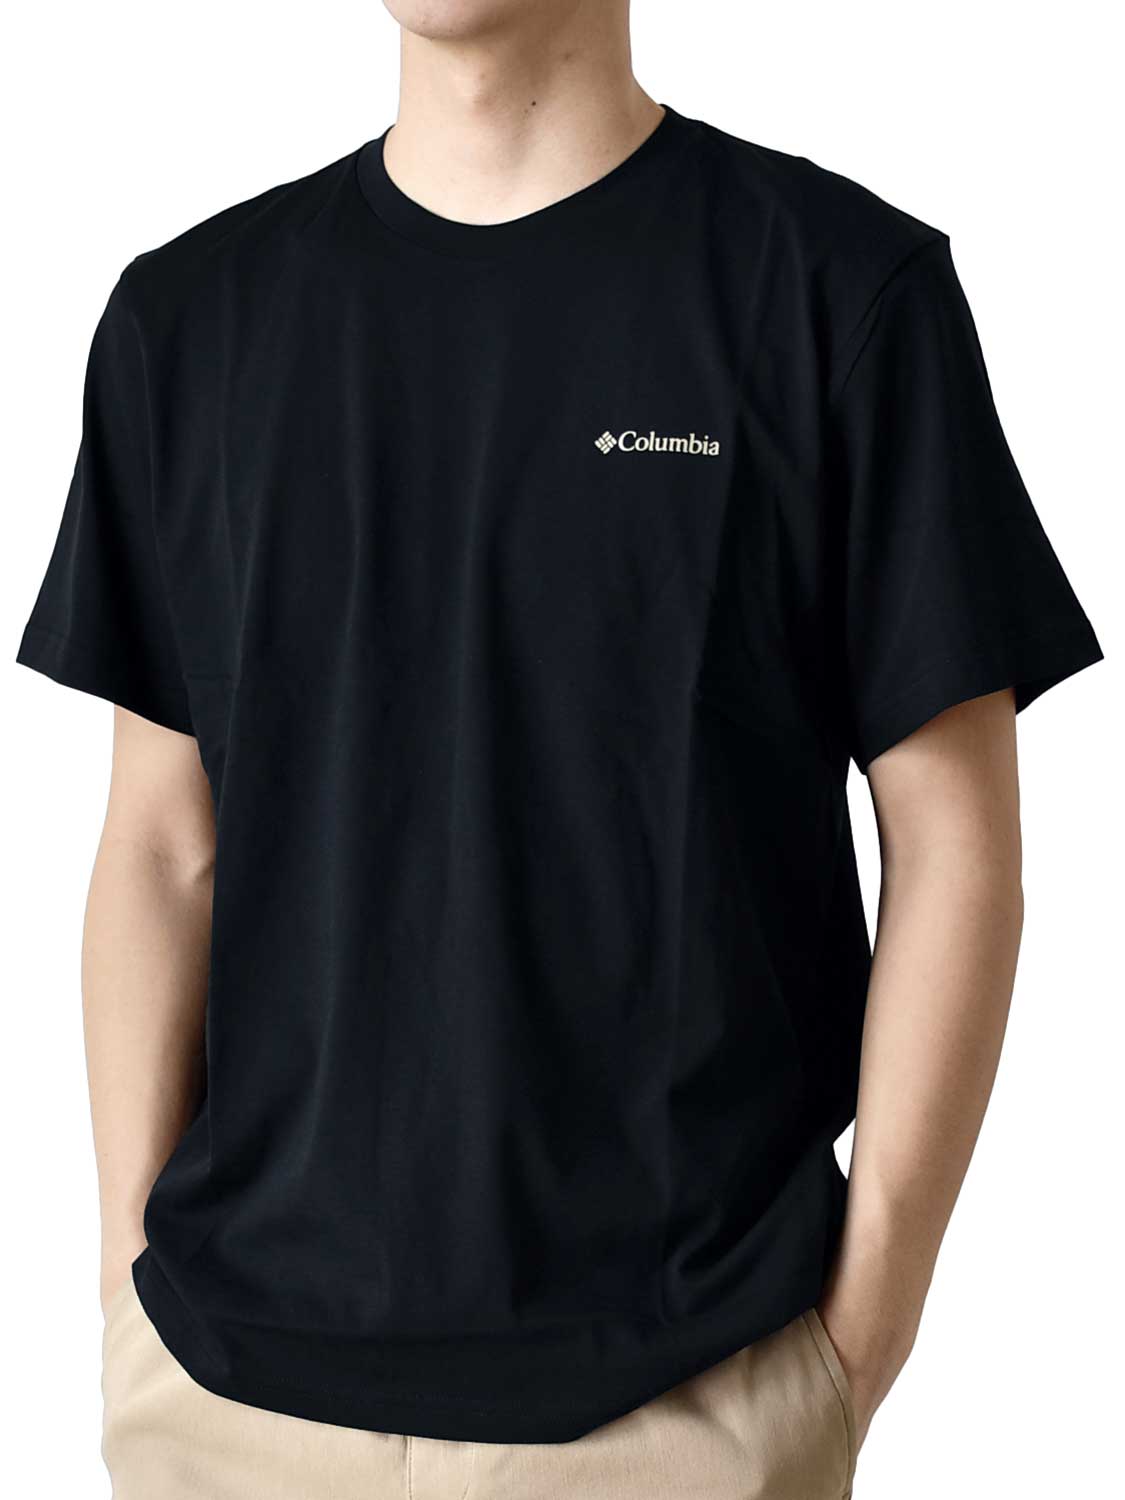 Columbia Tシャツ メンズ バックプリント 送料無料 通販YC コロンビア 半袖